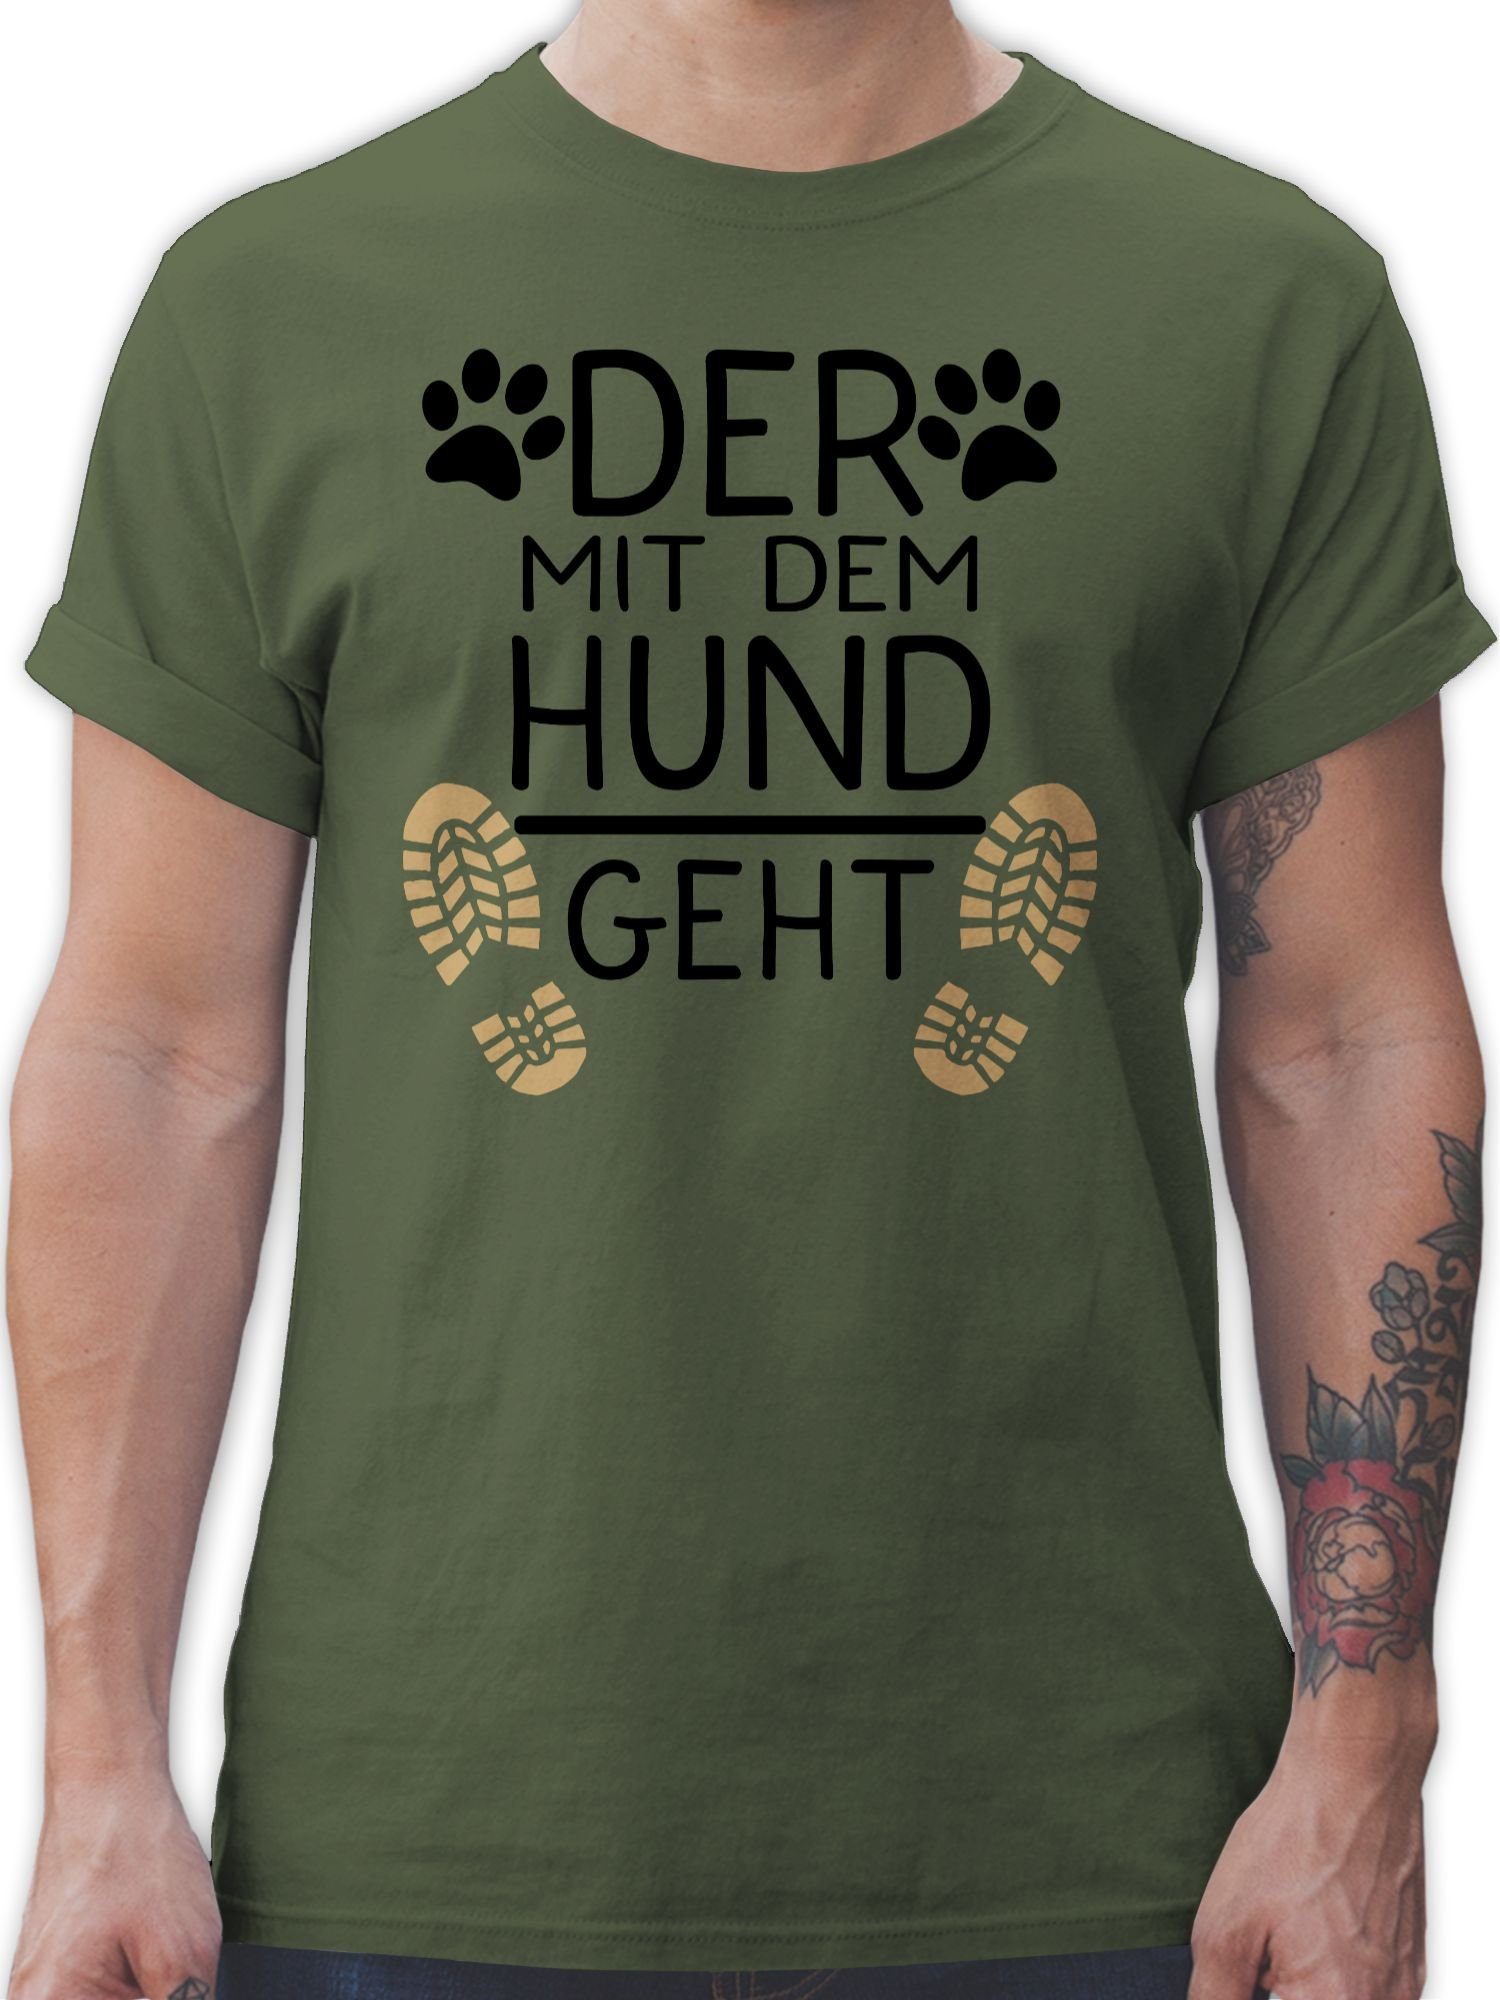 Shirtracer T-Shirt Der Geschenk geht Hund - Army dem mit für Grün schwarz 02 Hundebesitzer